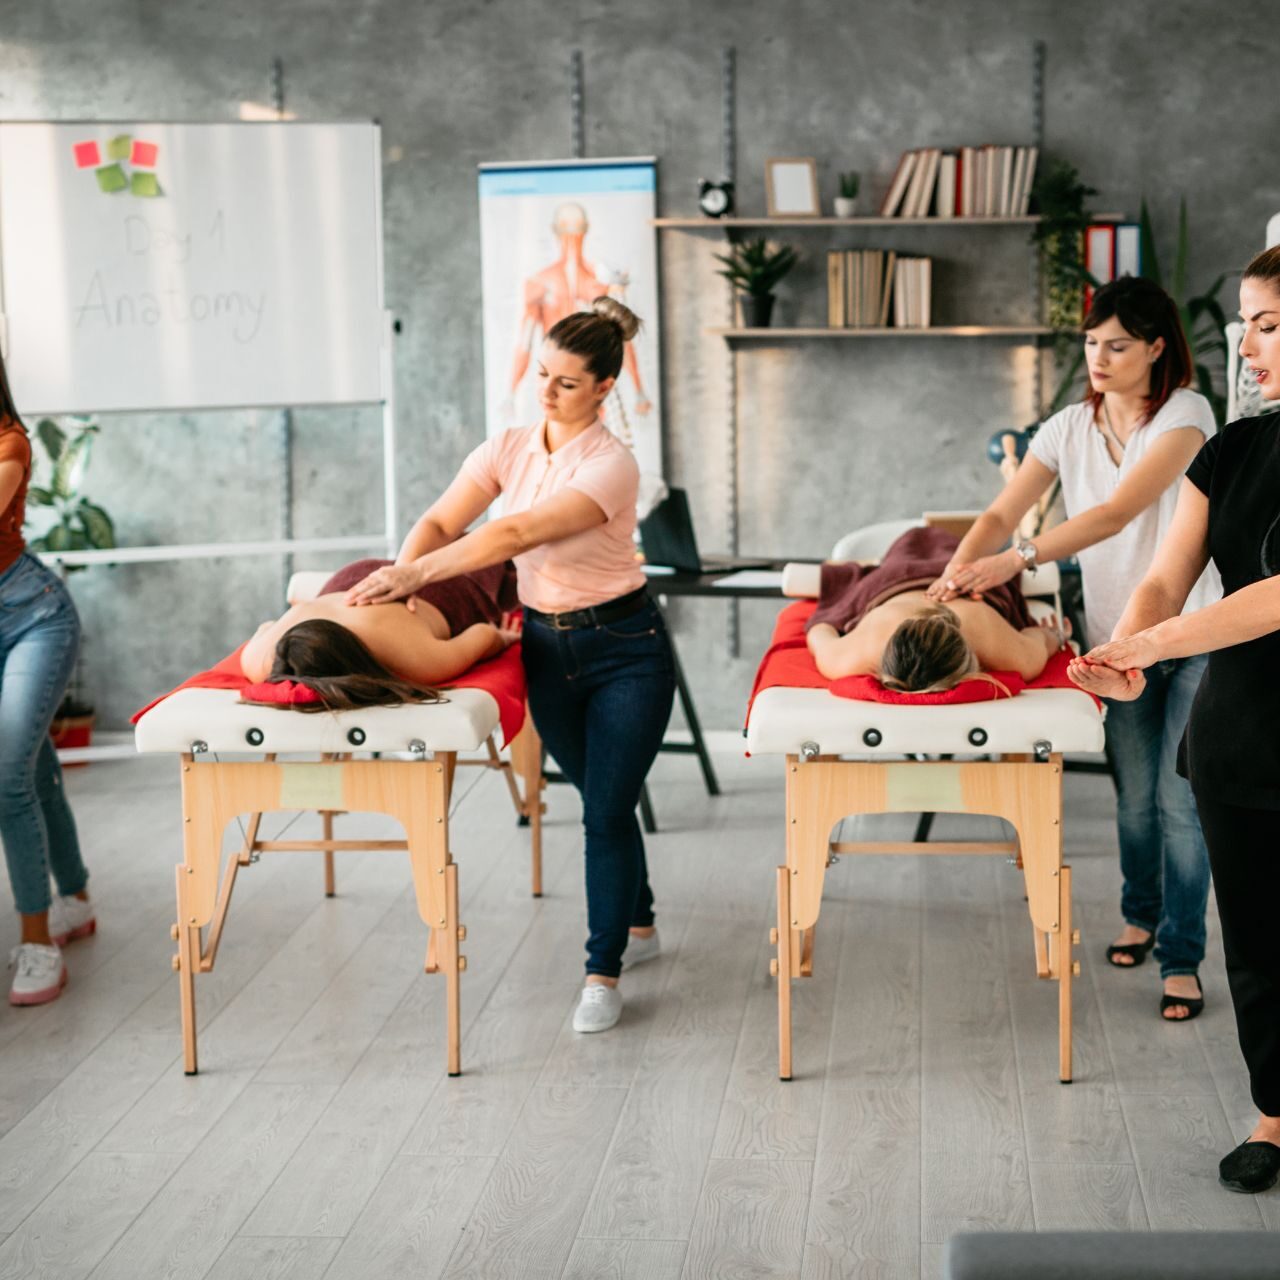 LFMBE ecole formation massage à Lyon lyon-formation-massage.fr , formation-massage-france.fr